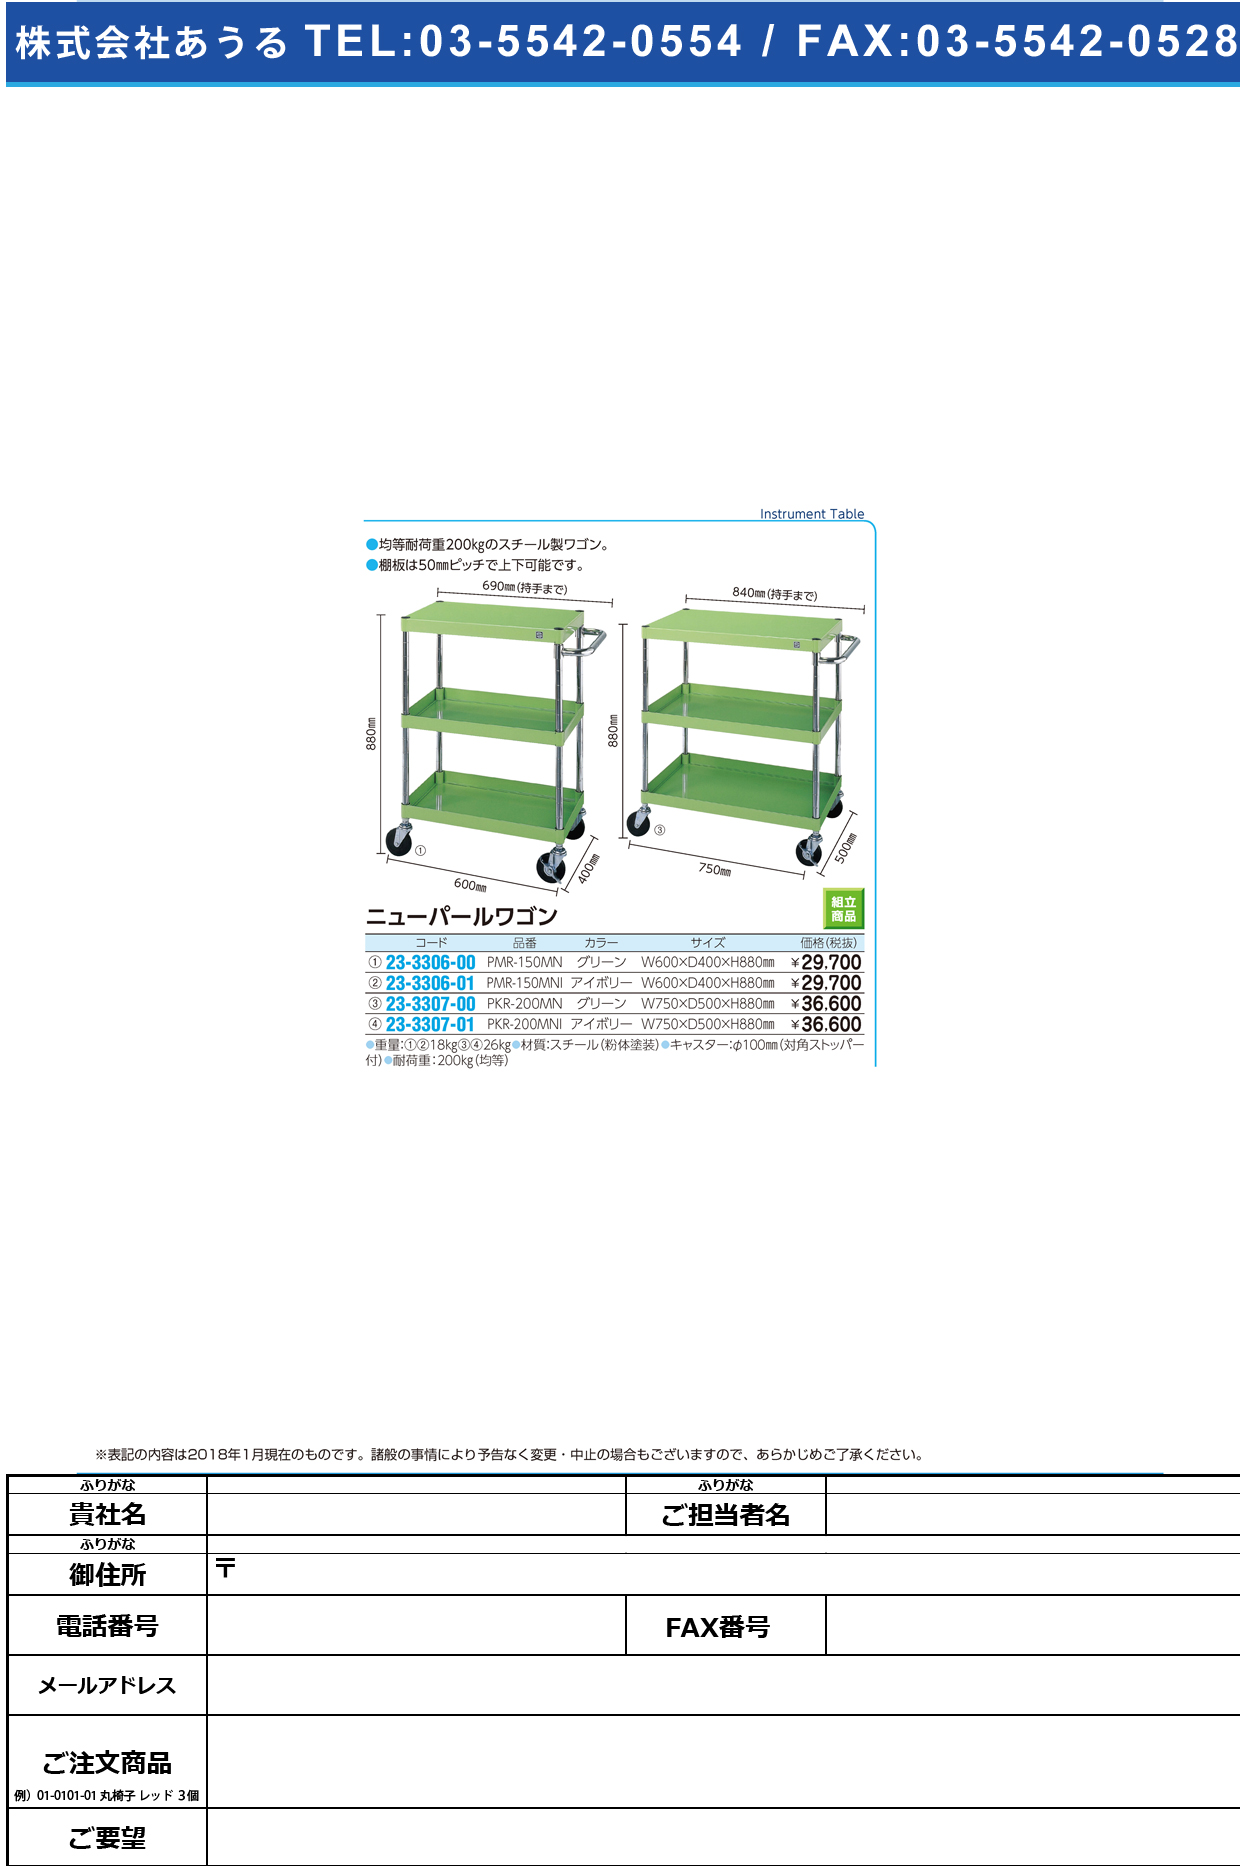 (23-3307-01)ニューパールワゴン PKR-200MNI(ｱｲﾎﾞﾘｰ) ﾆｭｰﾊﾟｰﾙﾜｺﾞﾝ【1台単位】【2018年カタログ商品】